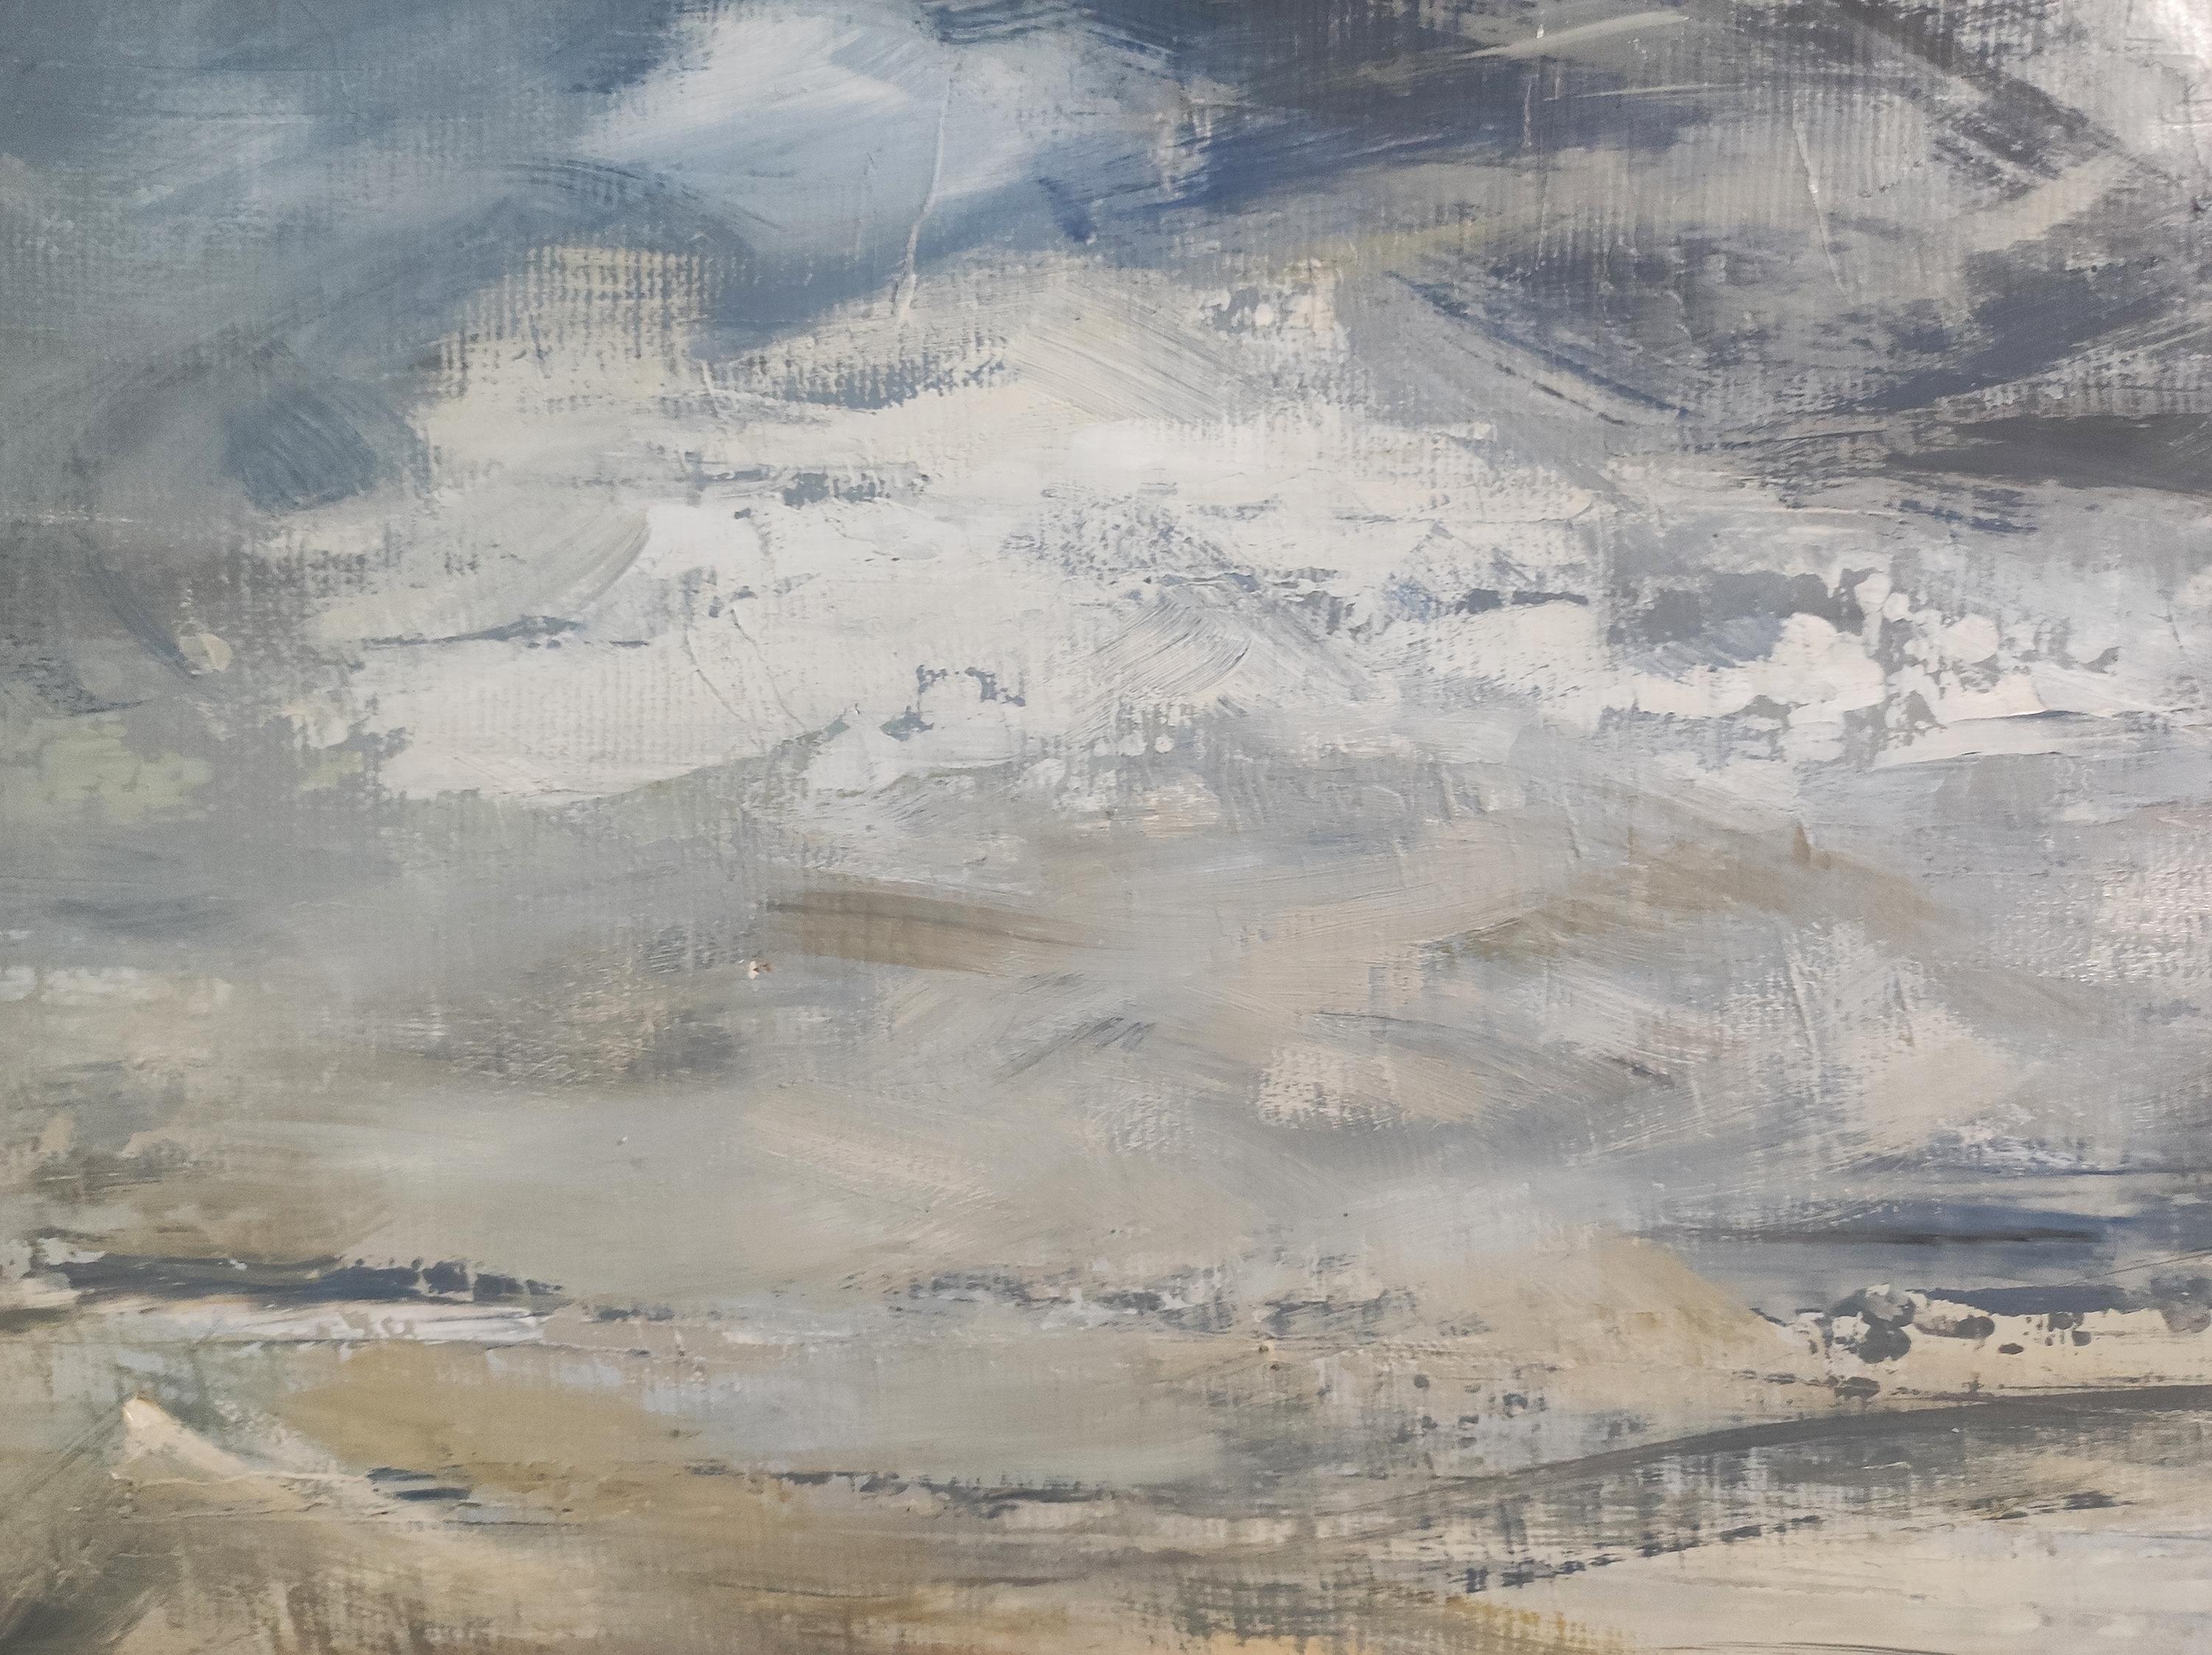 la côte fleurie, bord de mer, paysage abstrait, marine, huile sur toile 46x55 cm - Painting by SOPHIE DUMONT